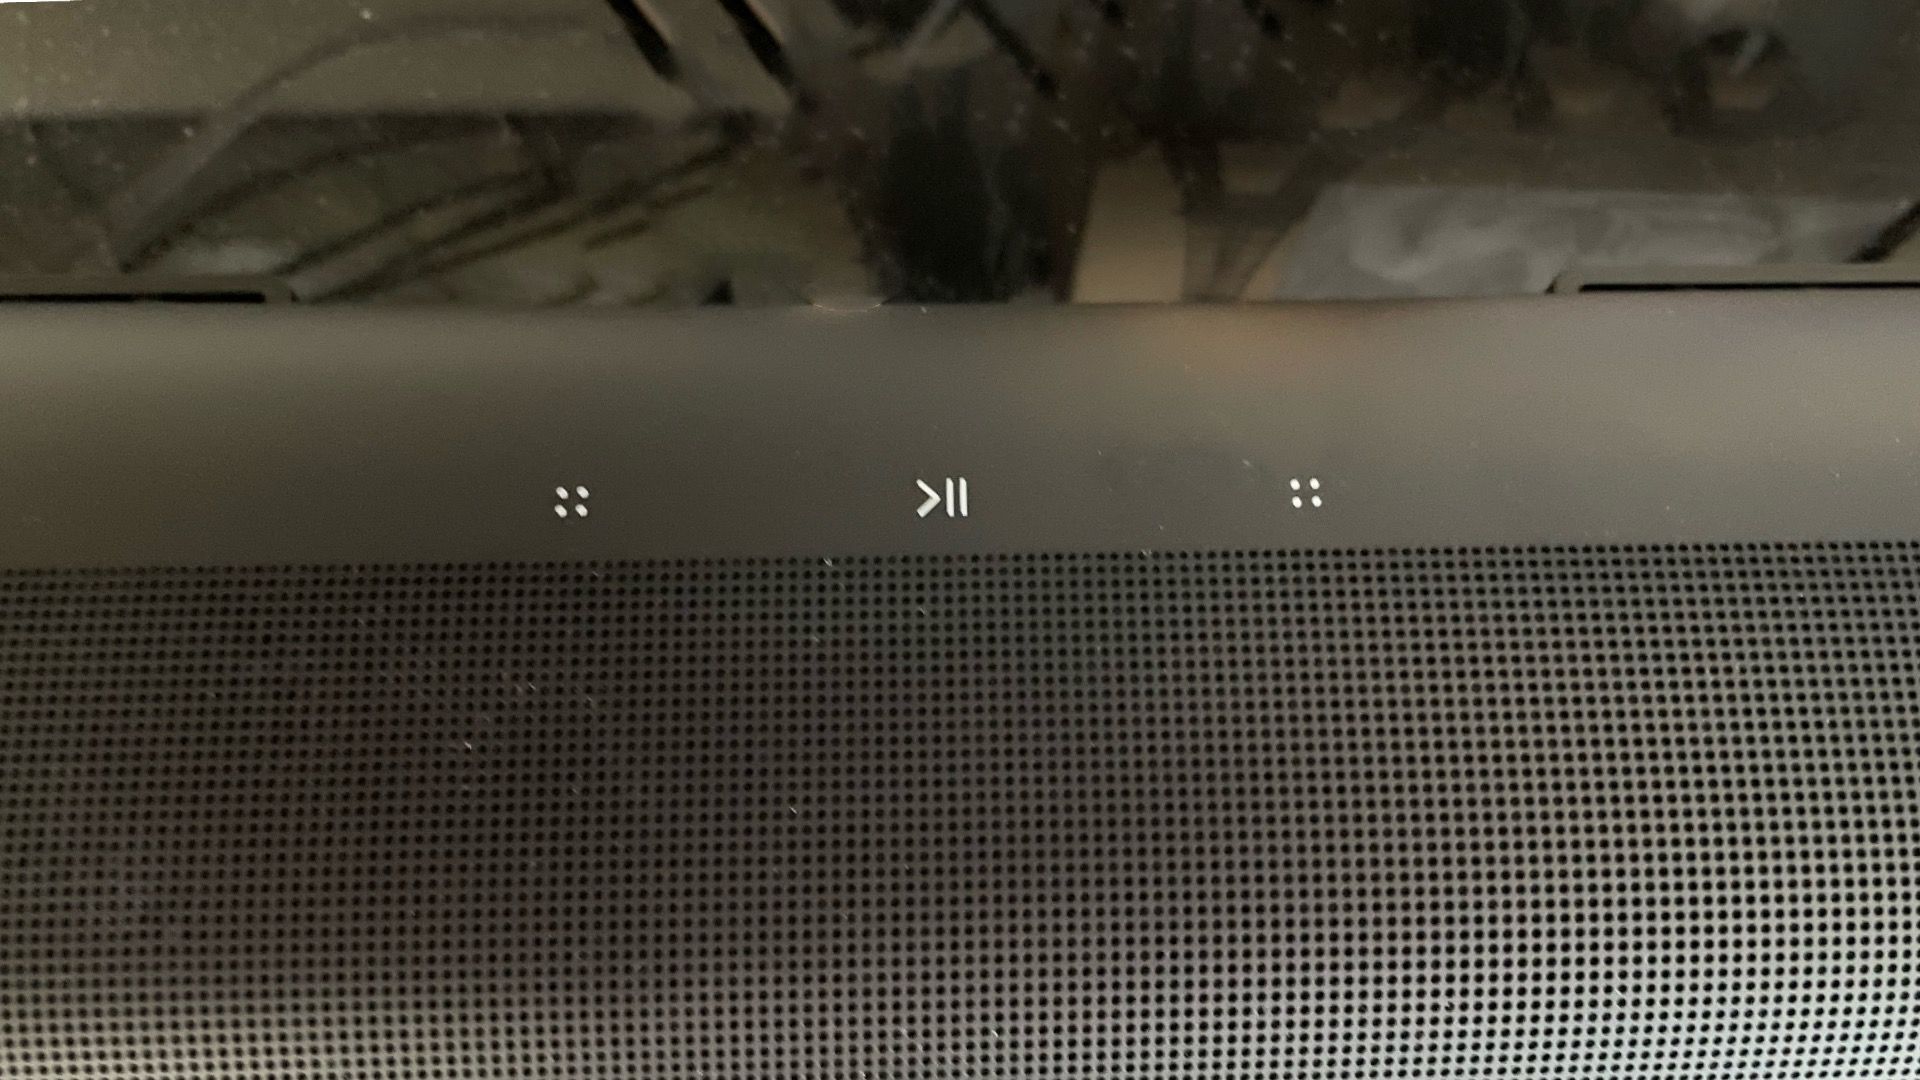 Top down of Sonos ARC soundbar